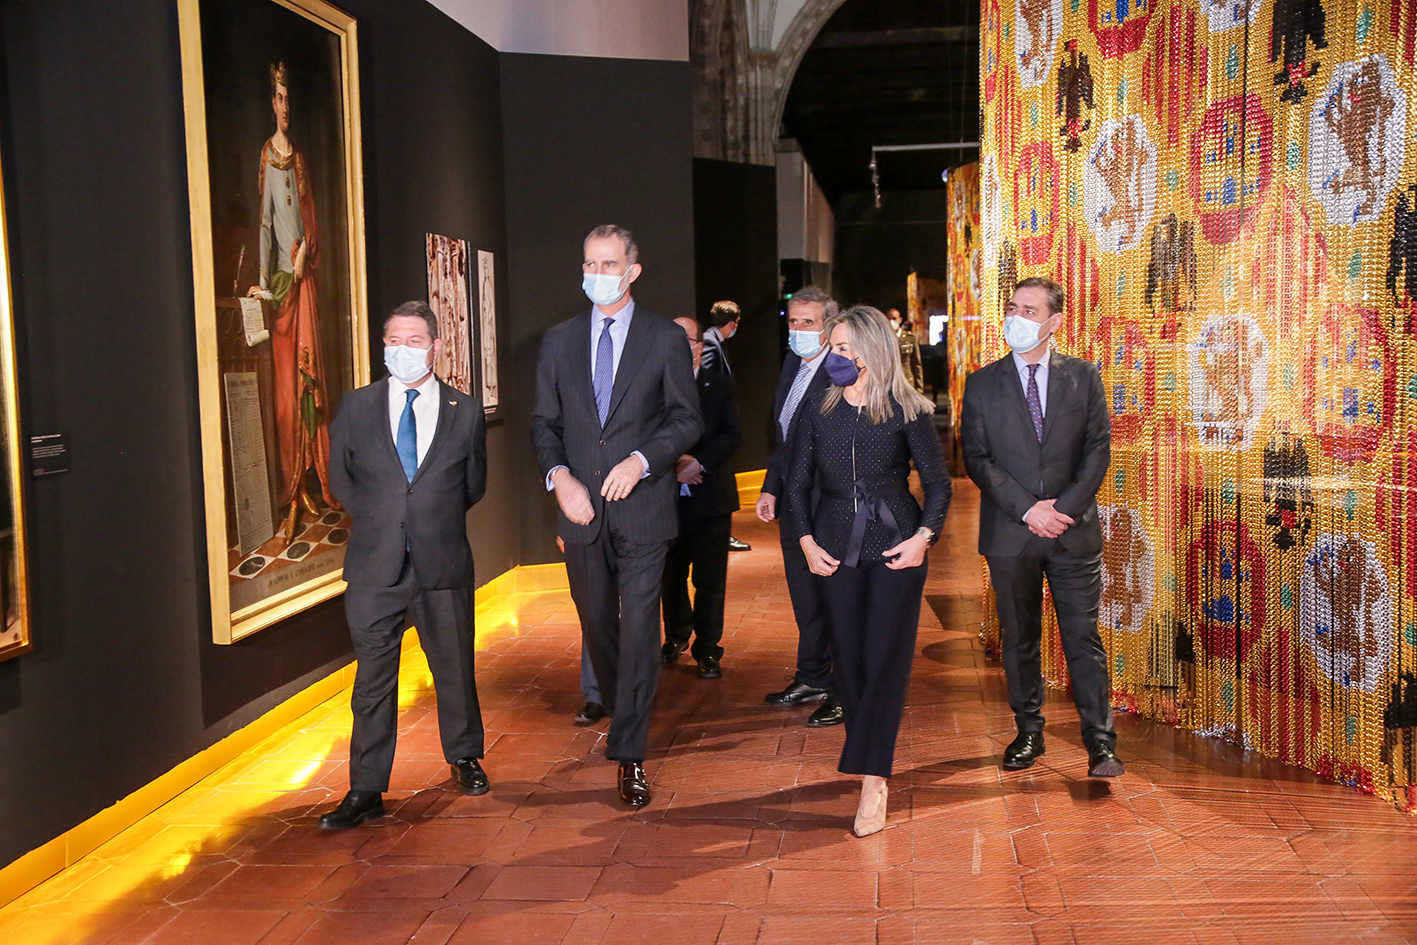 El rey Felipe VI inauguró la exposición de Alfonso X El Sabio en Toledo, junto a Emiliano García-Page, presidente de Castilla-La Mancha; y Milagros Tolón, alcaldesa de Toledo. Foto: Rebeca Arango.